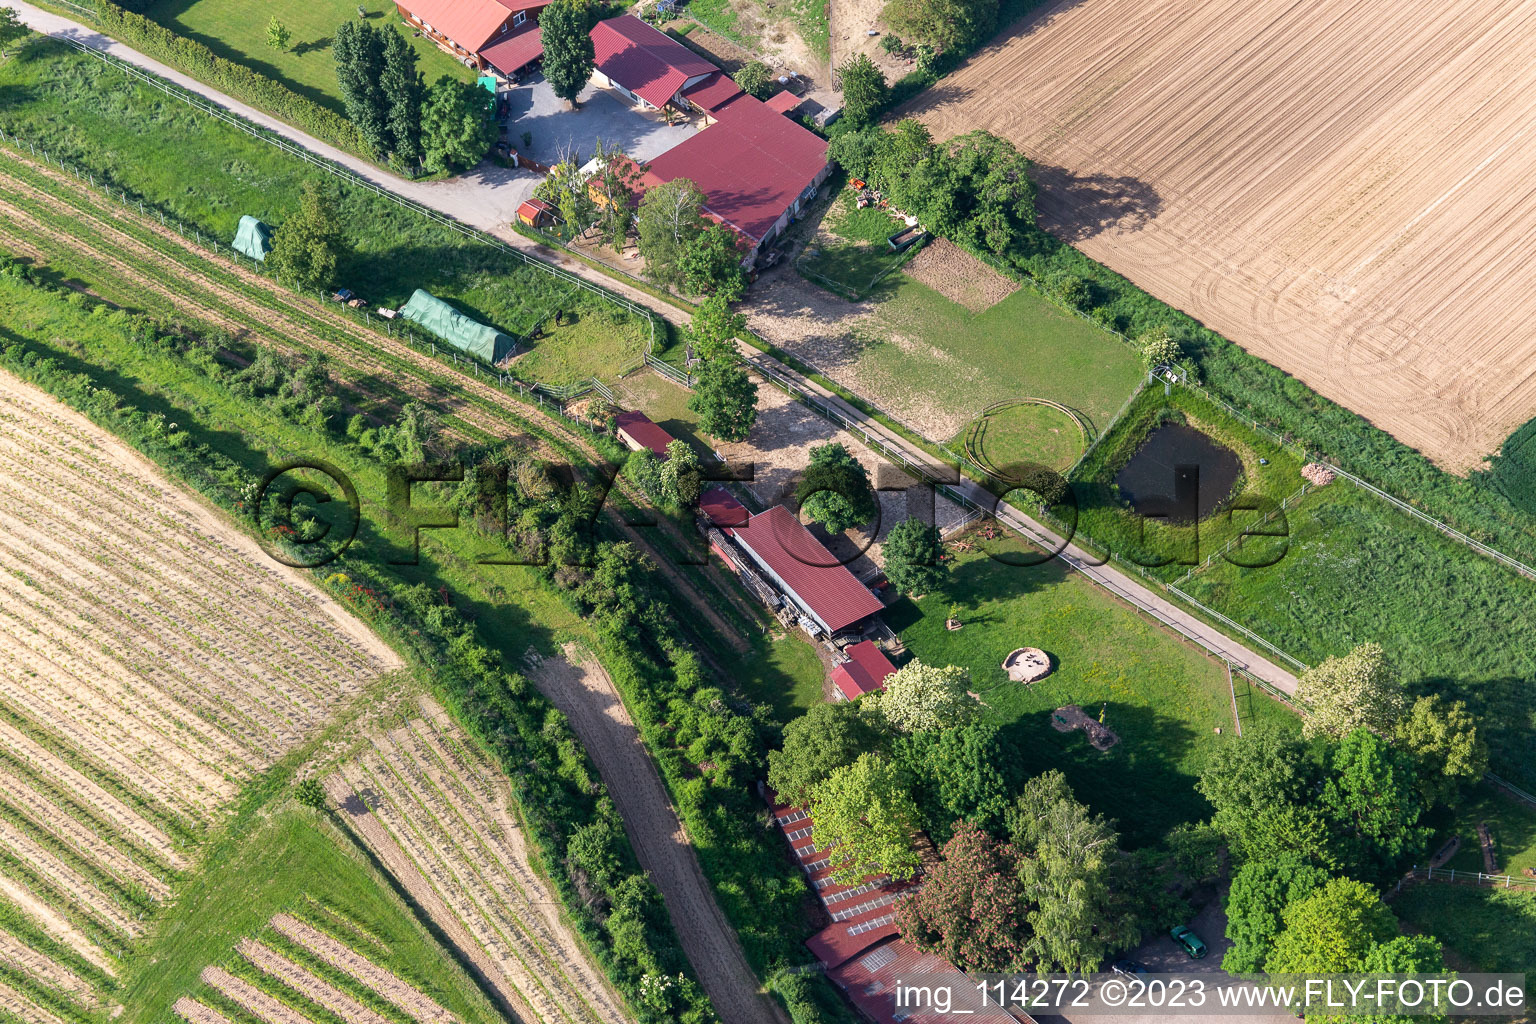 Luftbild von Ortsteil Herxheim in Herxheim bei Landau/Pfalz im Bundesland Rheinland-Pfalz, Deutschland